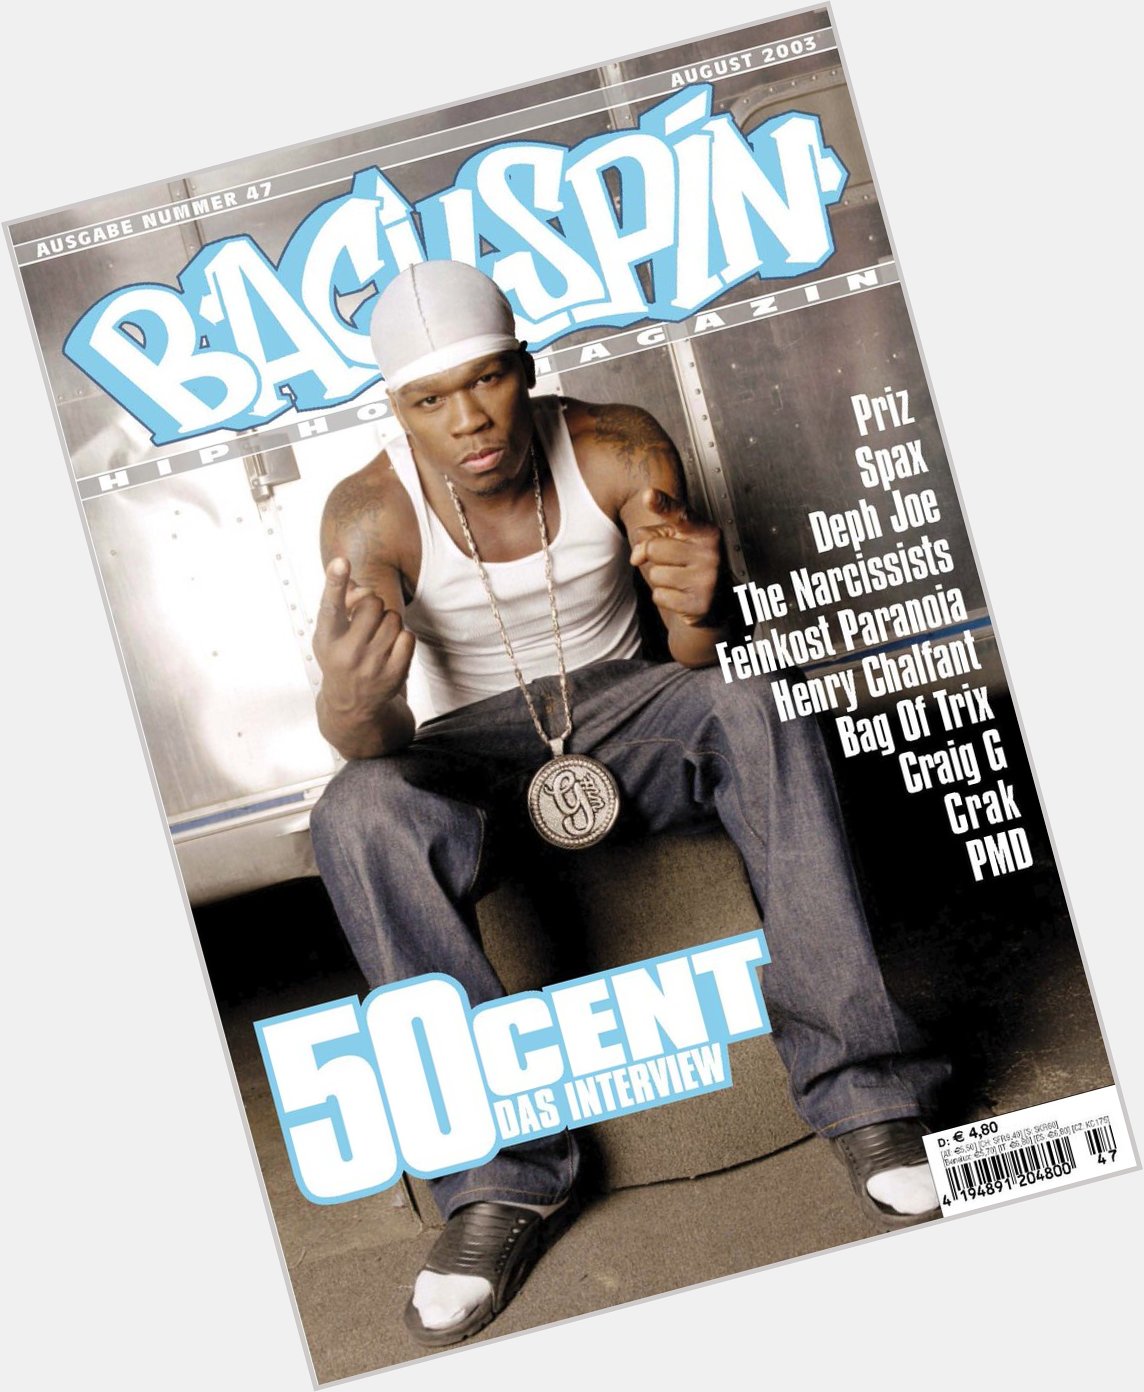 Happy Birthday, 50 Cent!  